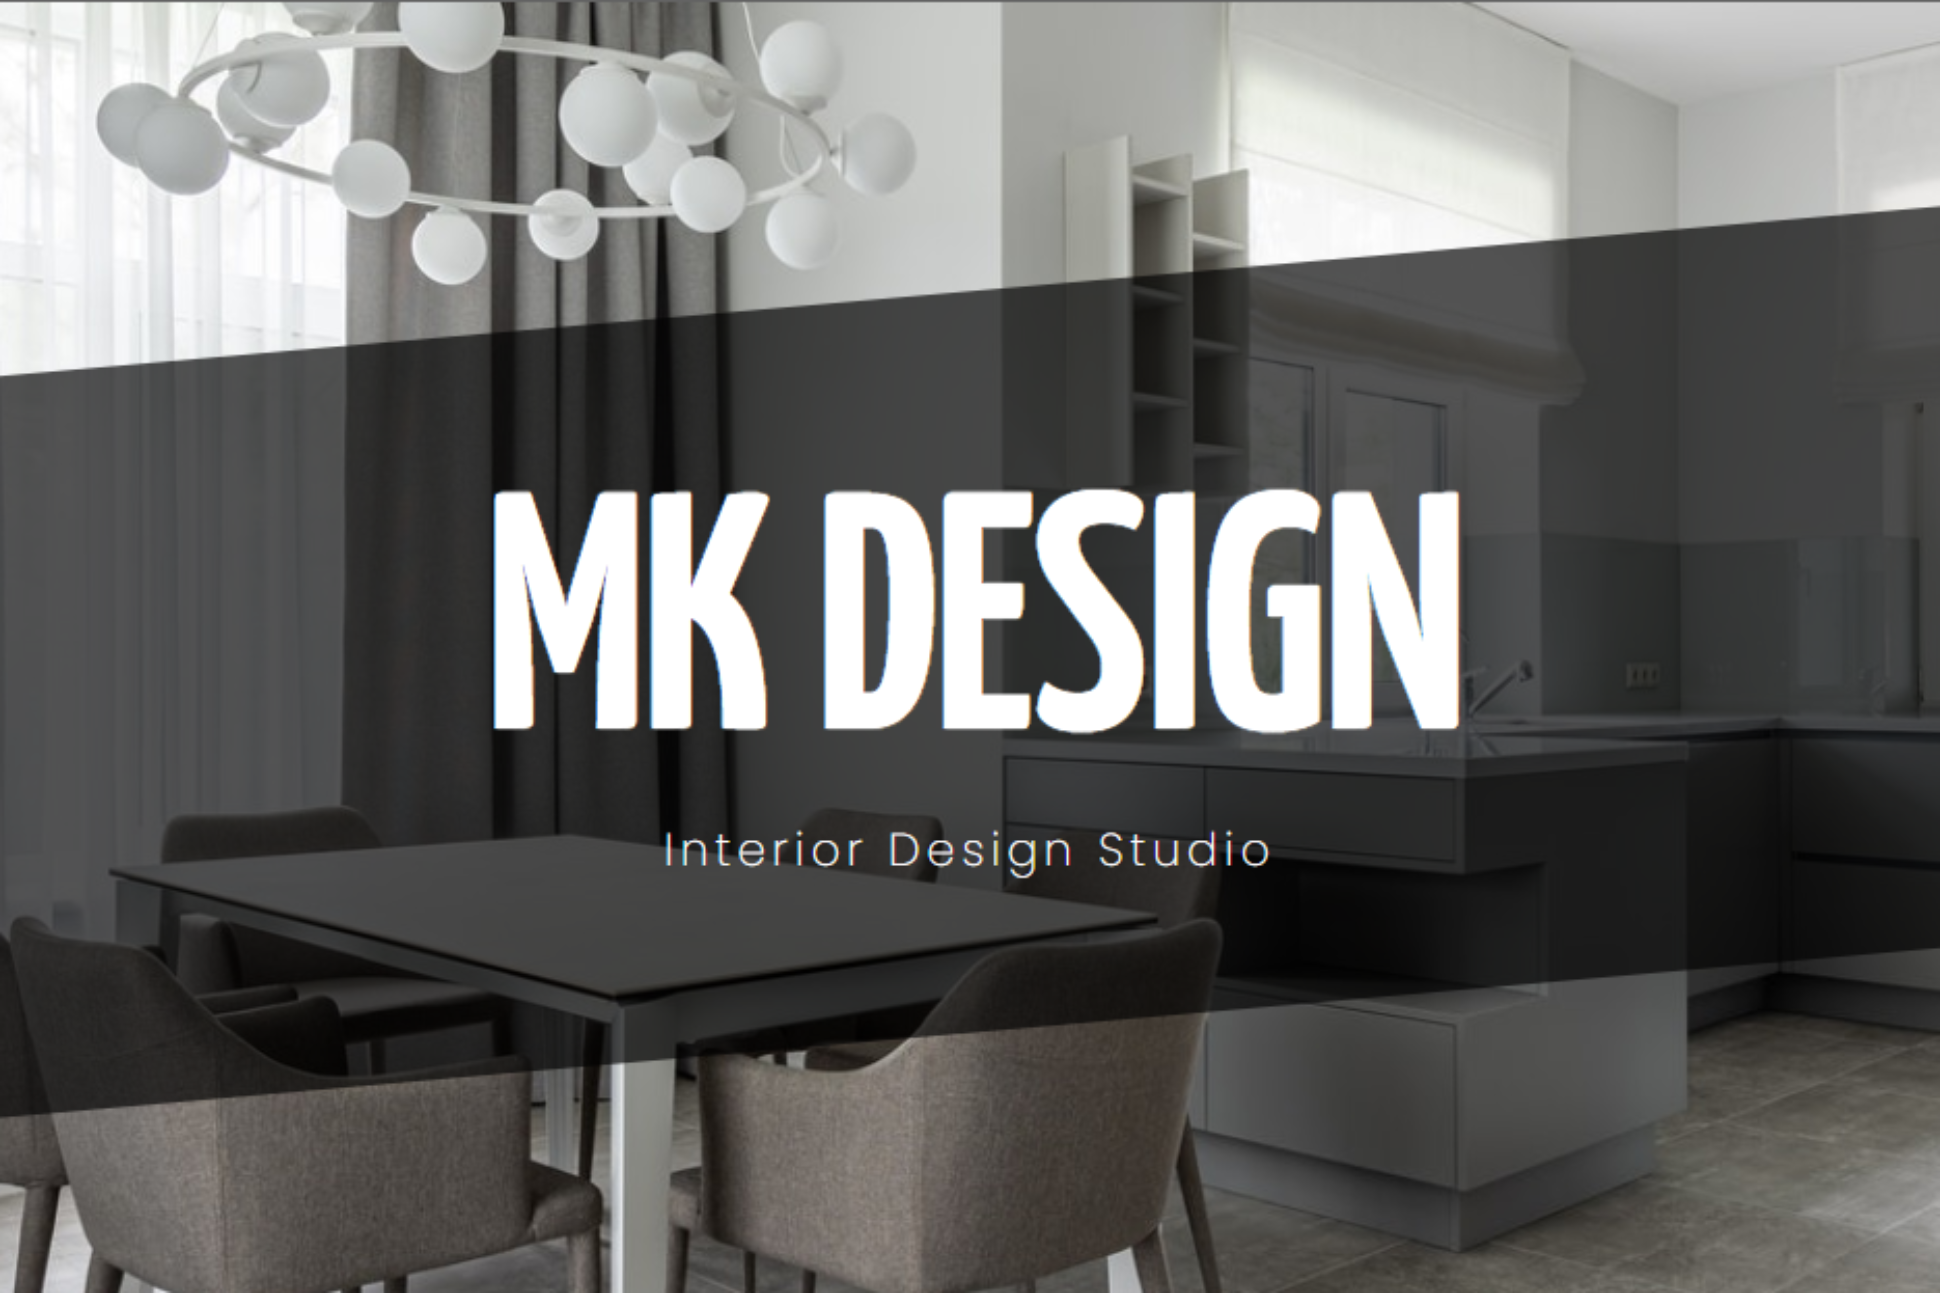 MK interior design